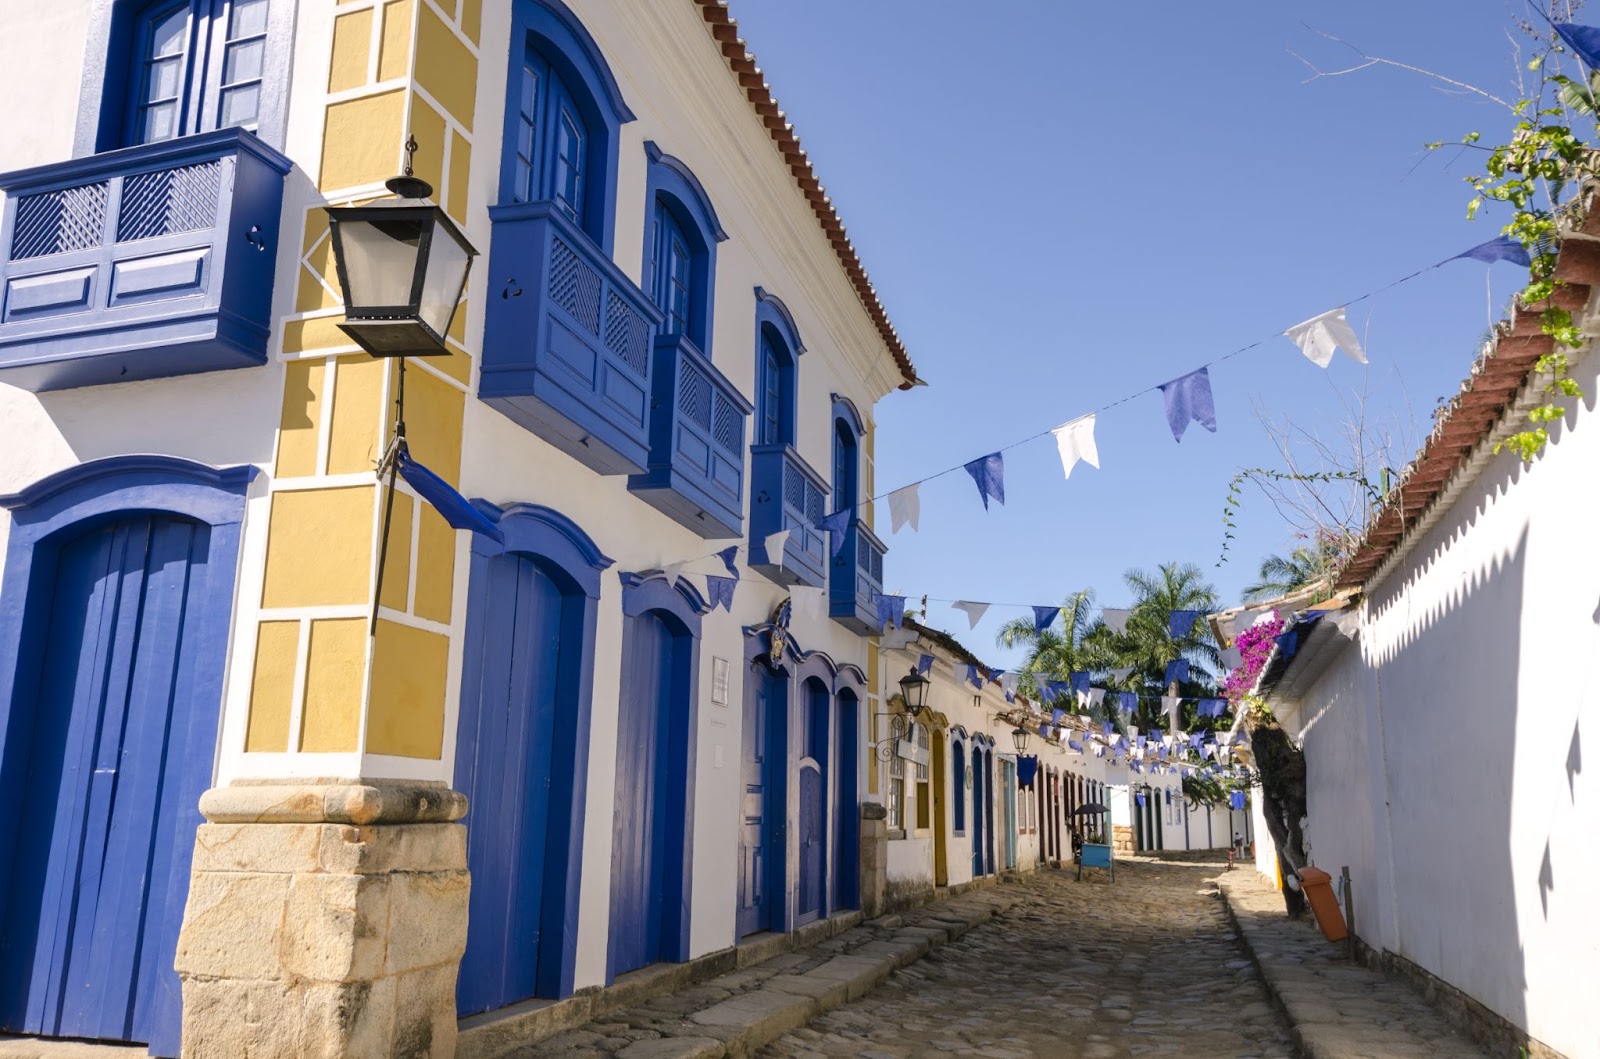 Rua histórica de Paraty com casas coloniais brancas com portas e janelas em azul